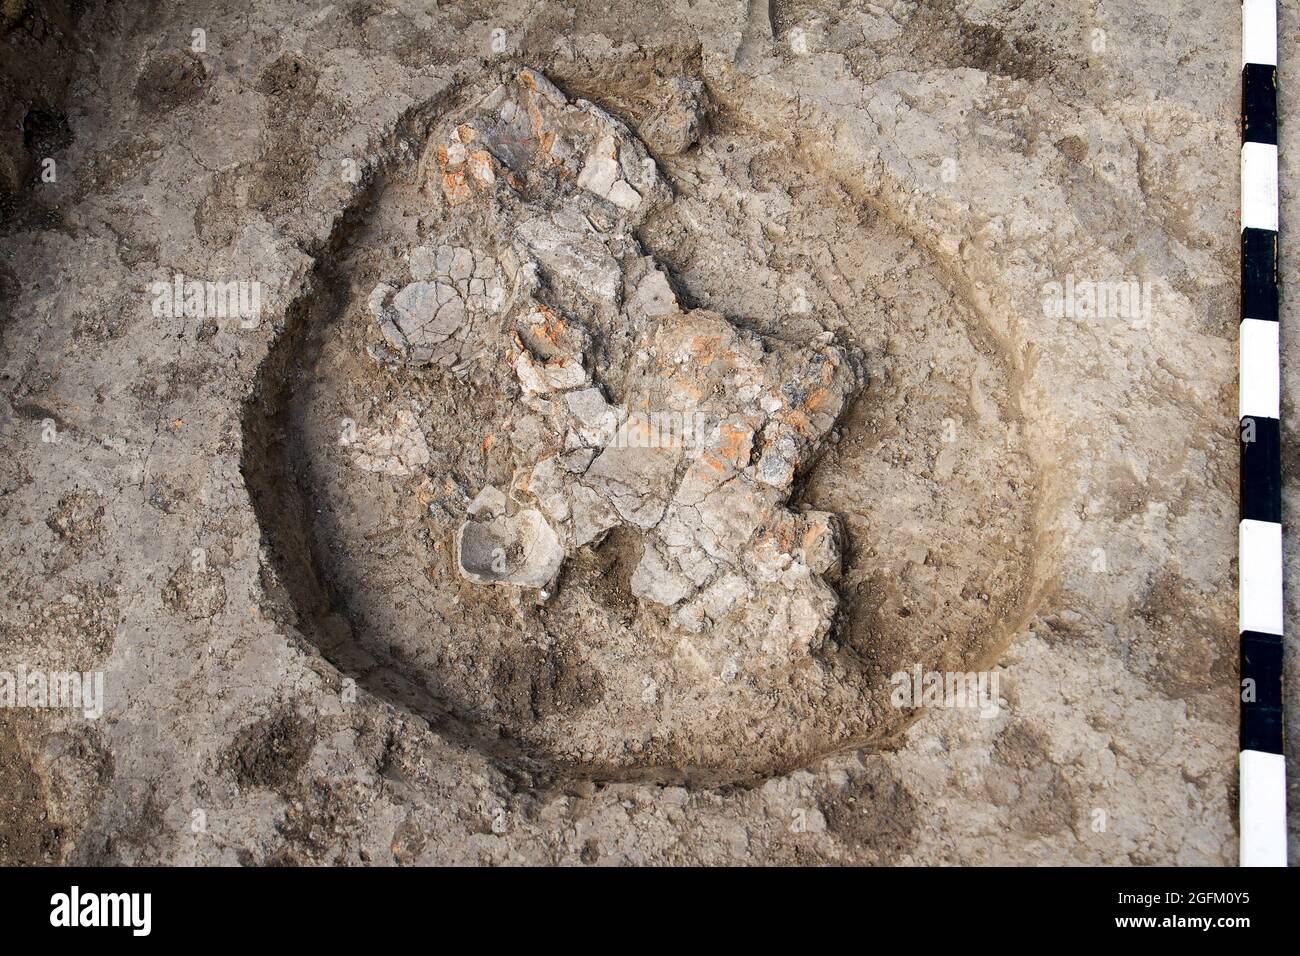 Scavi archeologici, scavare un antico manufatto argilloso con attrezzi speciali nel terreno Foto Stock